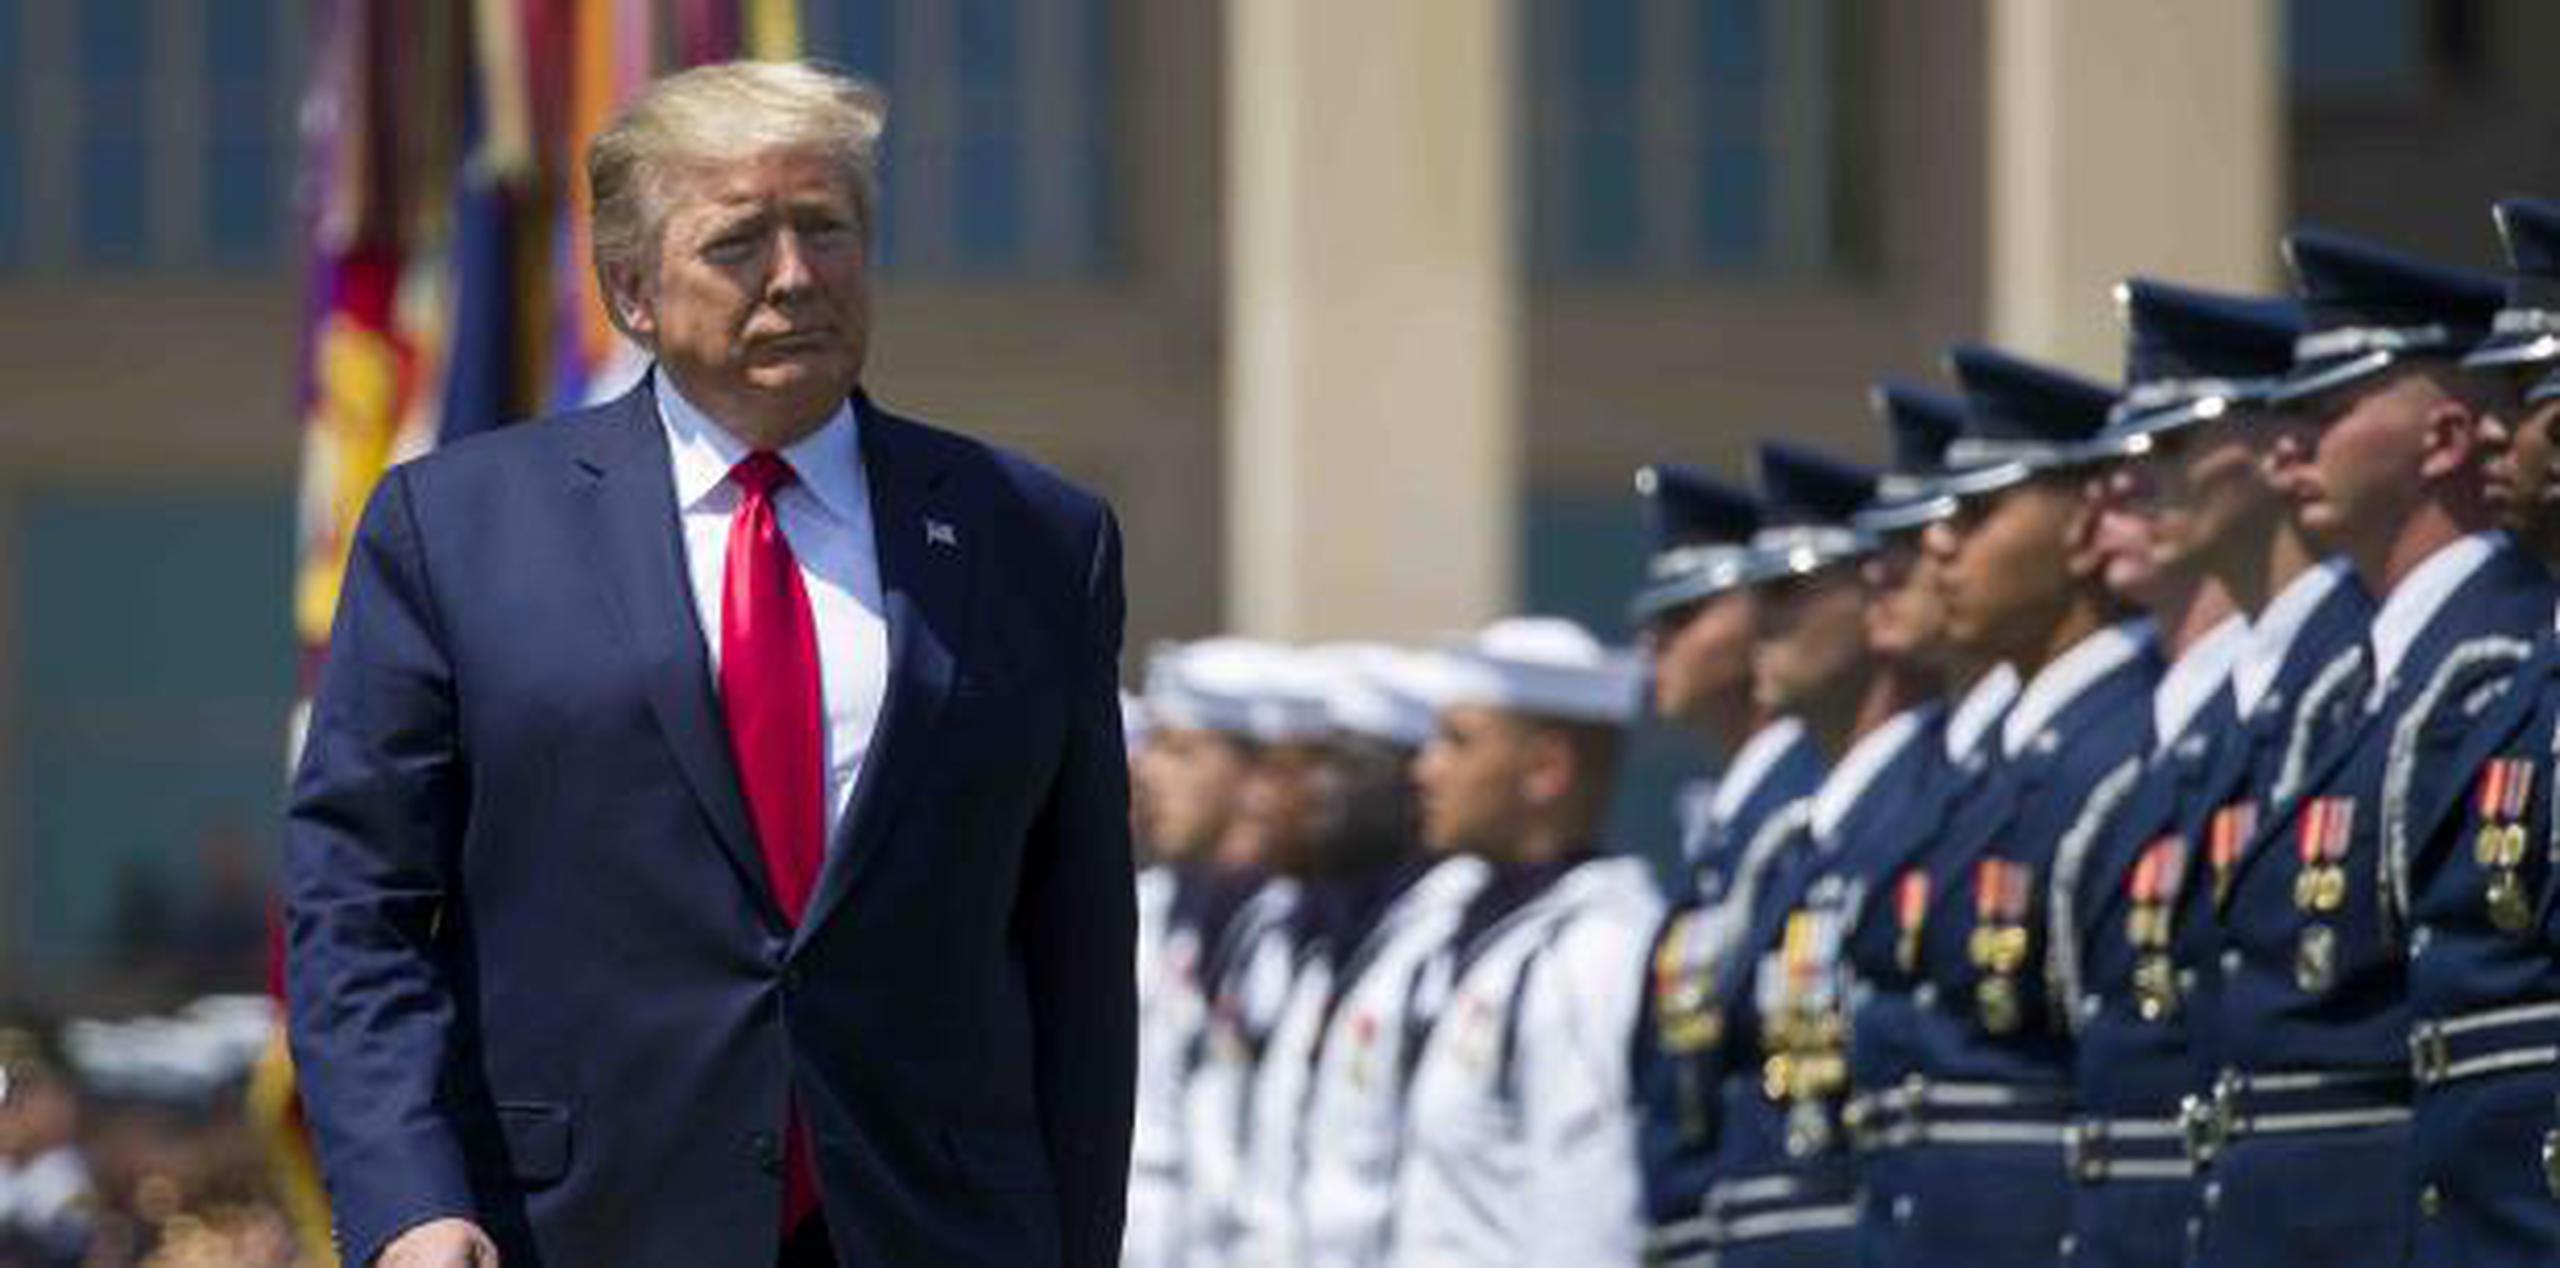 El pasado 25 de julio, Trump también participó de una actividad militar. (AP)